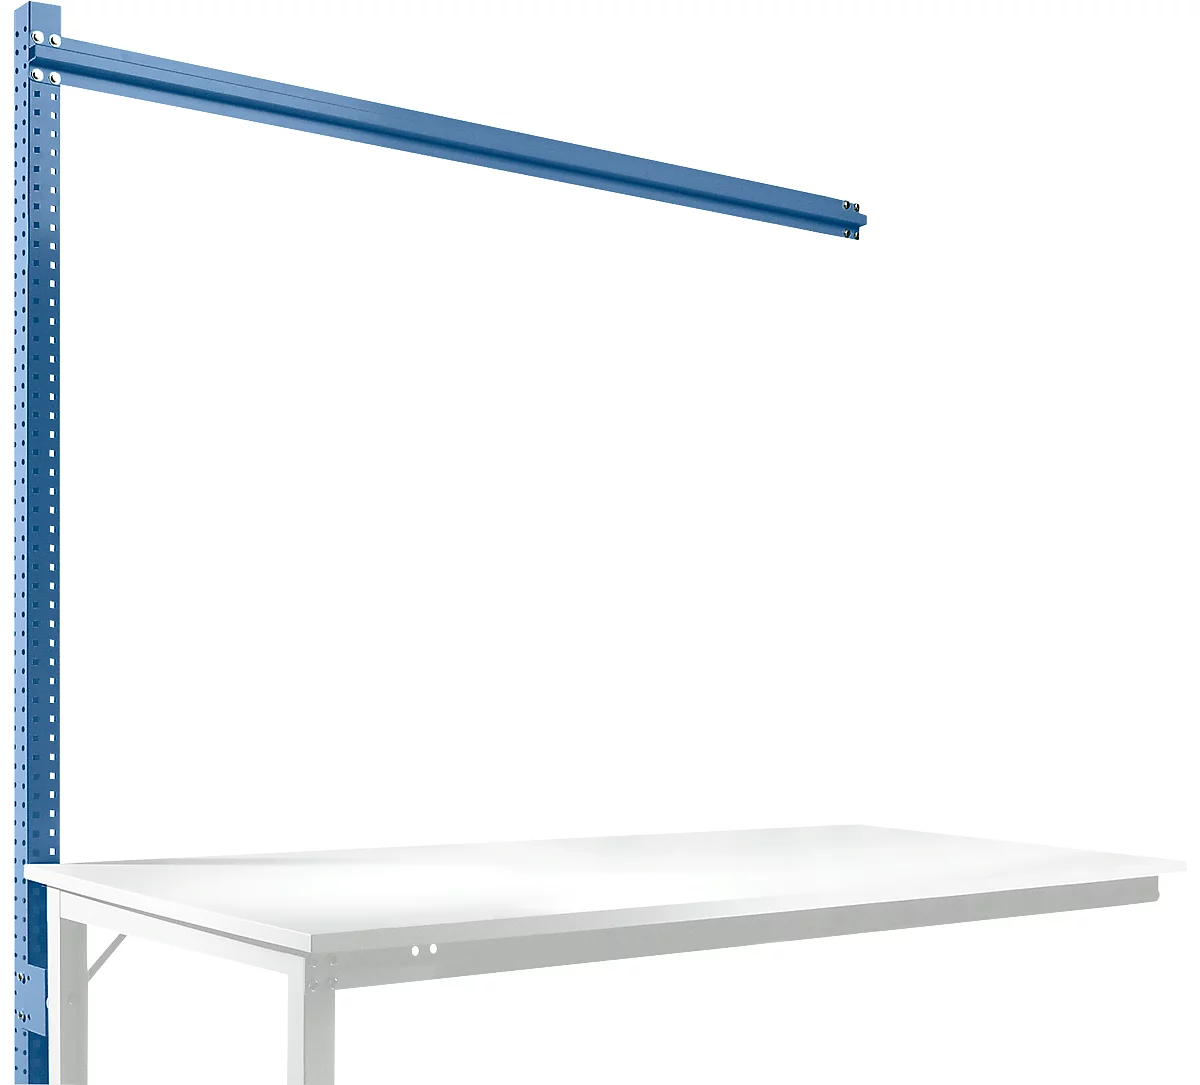 Estructura pórtica adicional, Mesa de extensión SPEZIAL sistema mesa de trabajo/banco de trabajo UNIVERSAL/PROFI, 1750 mm, azul brillante